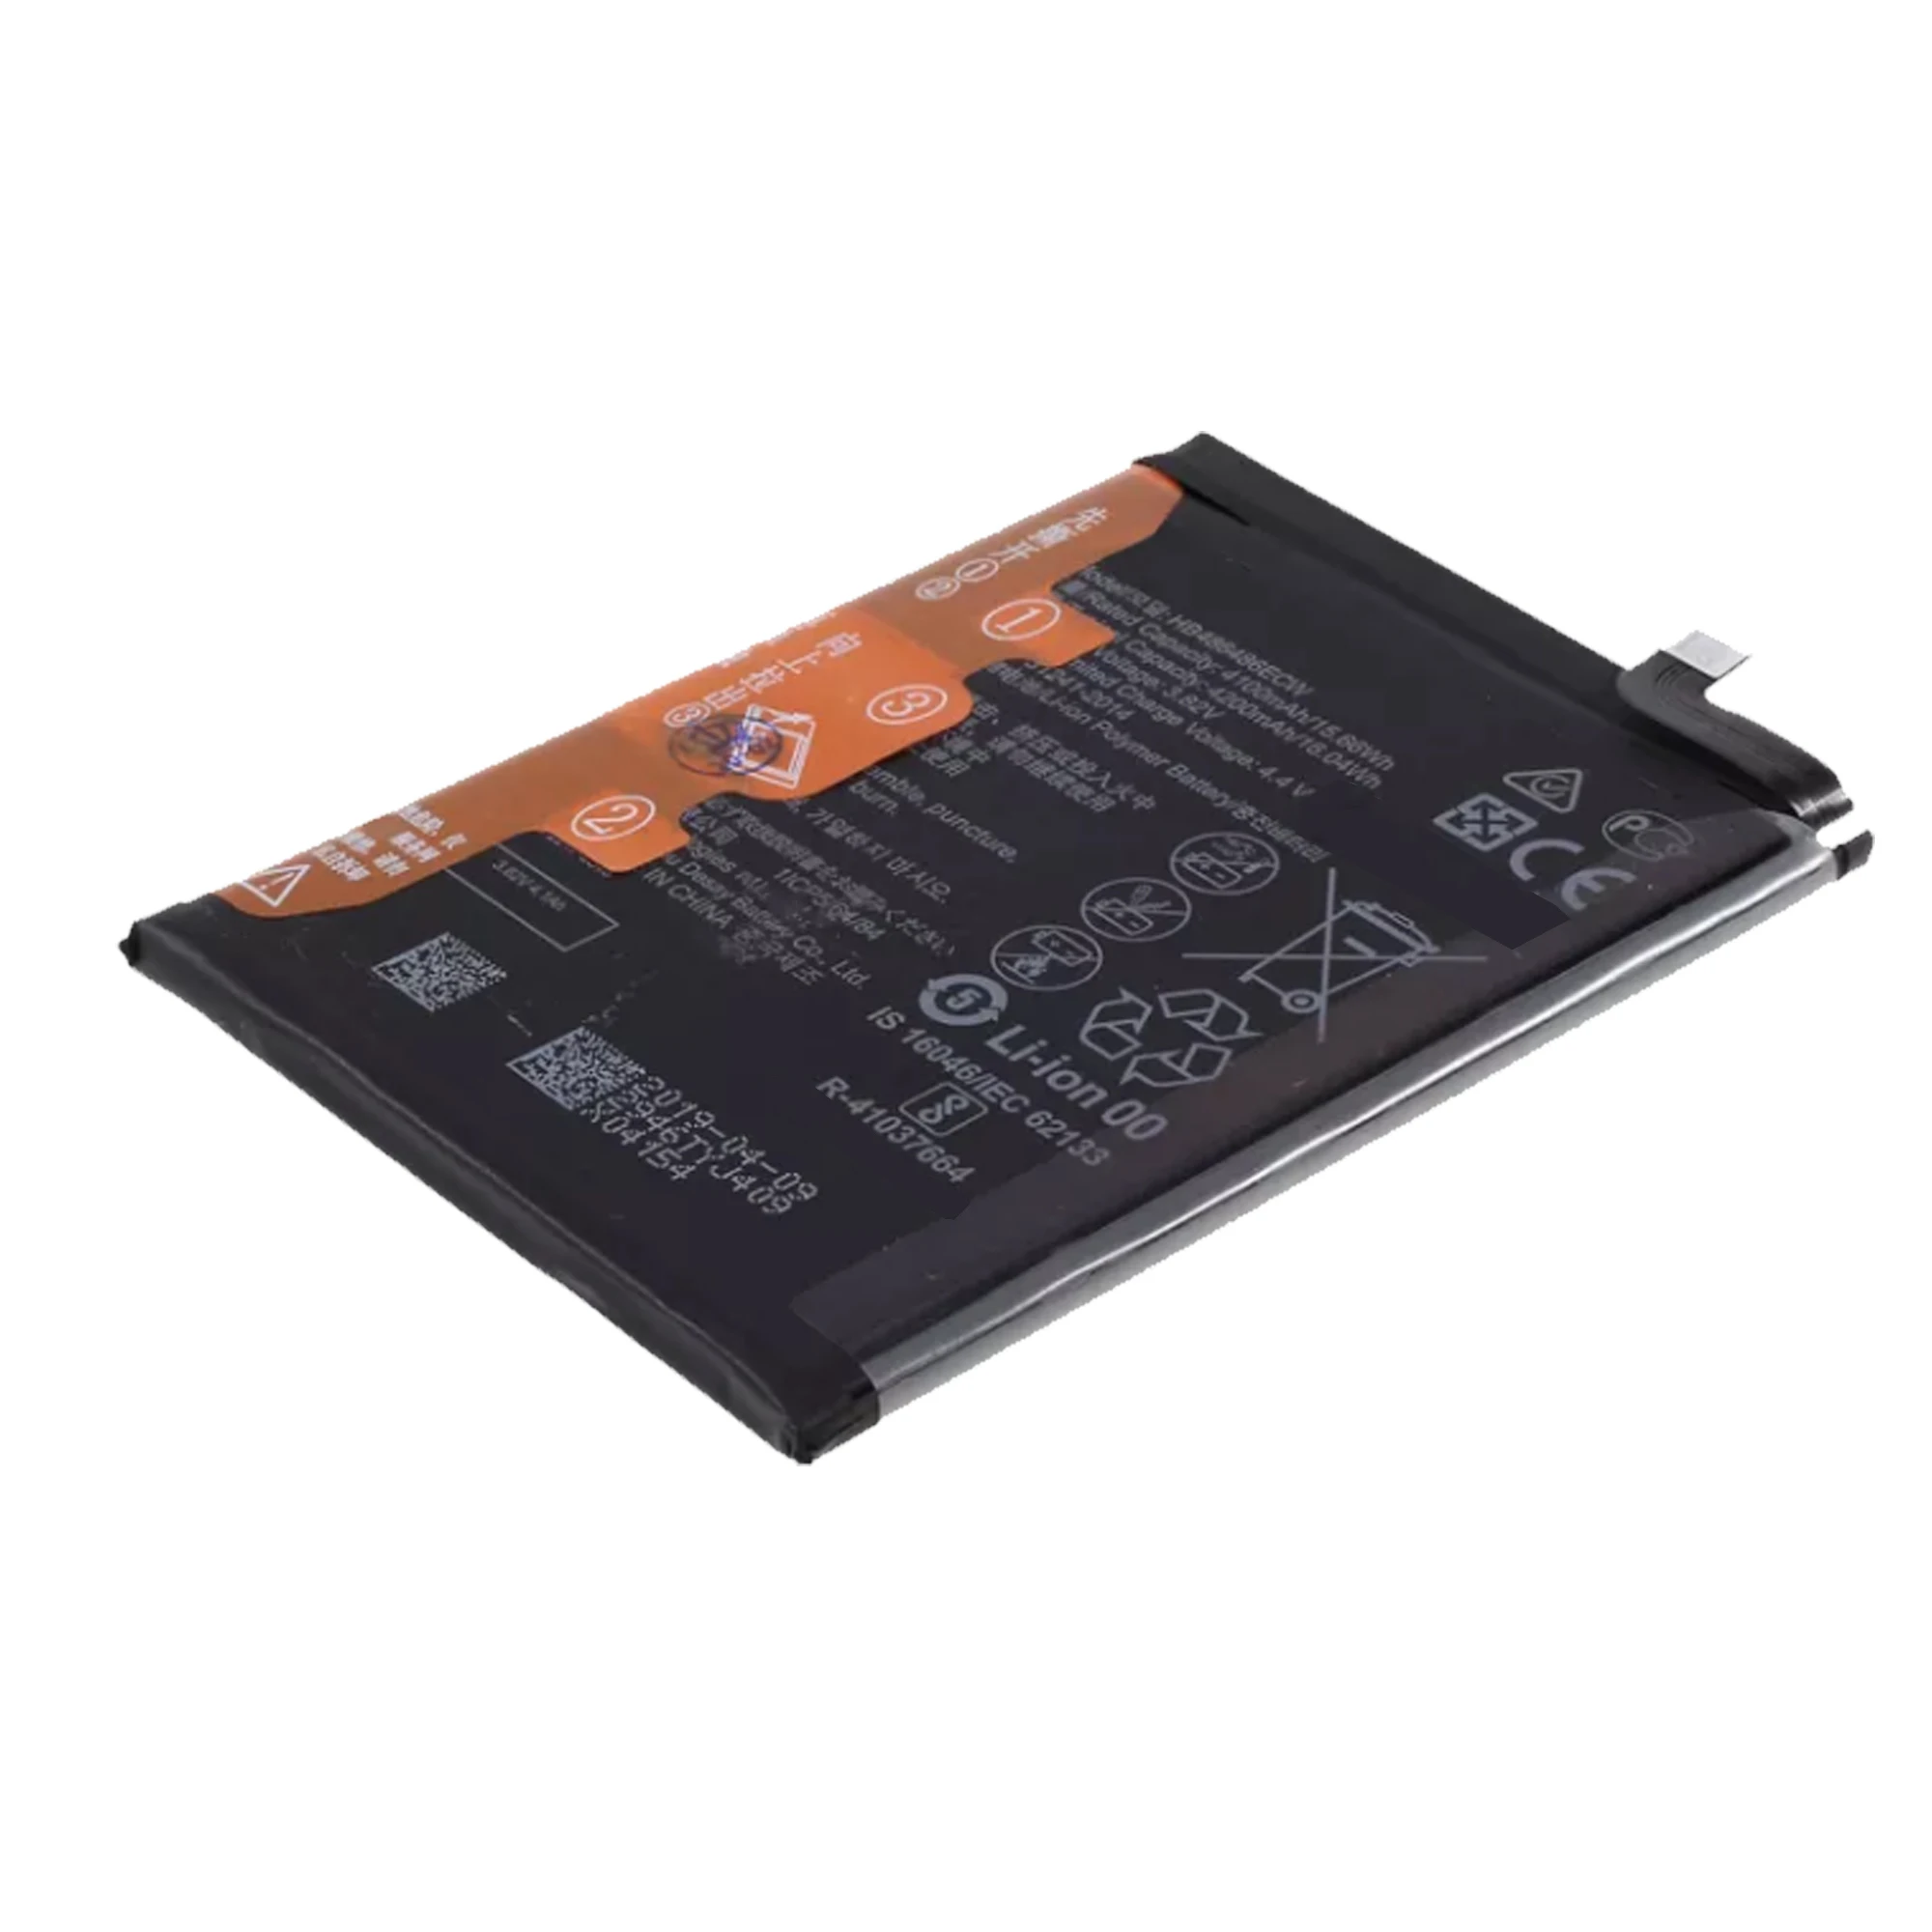 HB486486ECW Battery For Huawei P30 Pro Mate20 Pro Mate 20 Pro Repair Part Original Capacity Mobile Phone Batteries Bateria enlarge